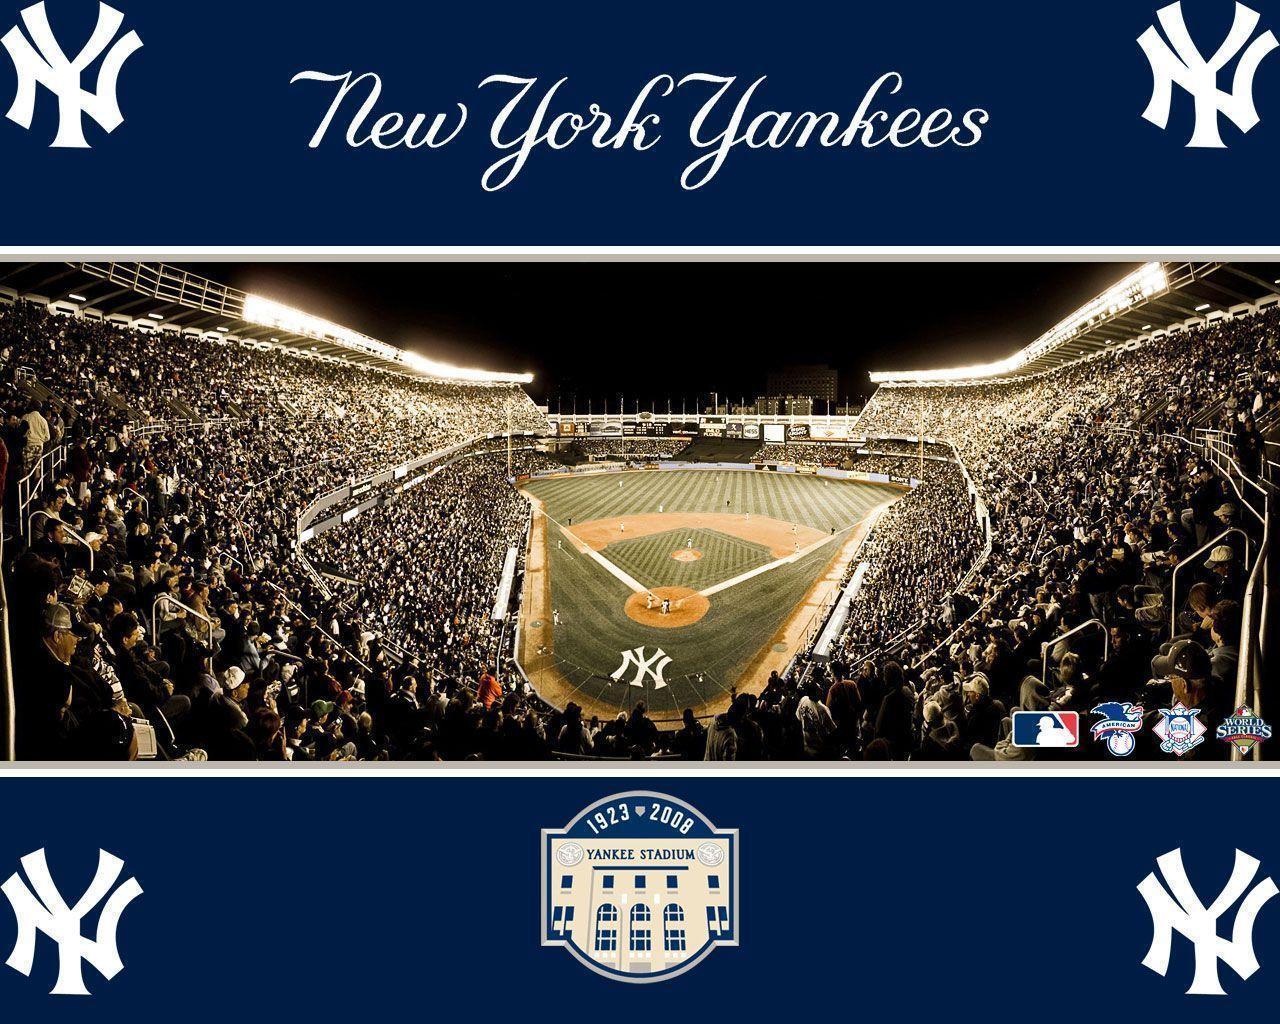 New York Yankees 2012 Schedule Wallpapers